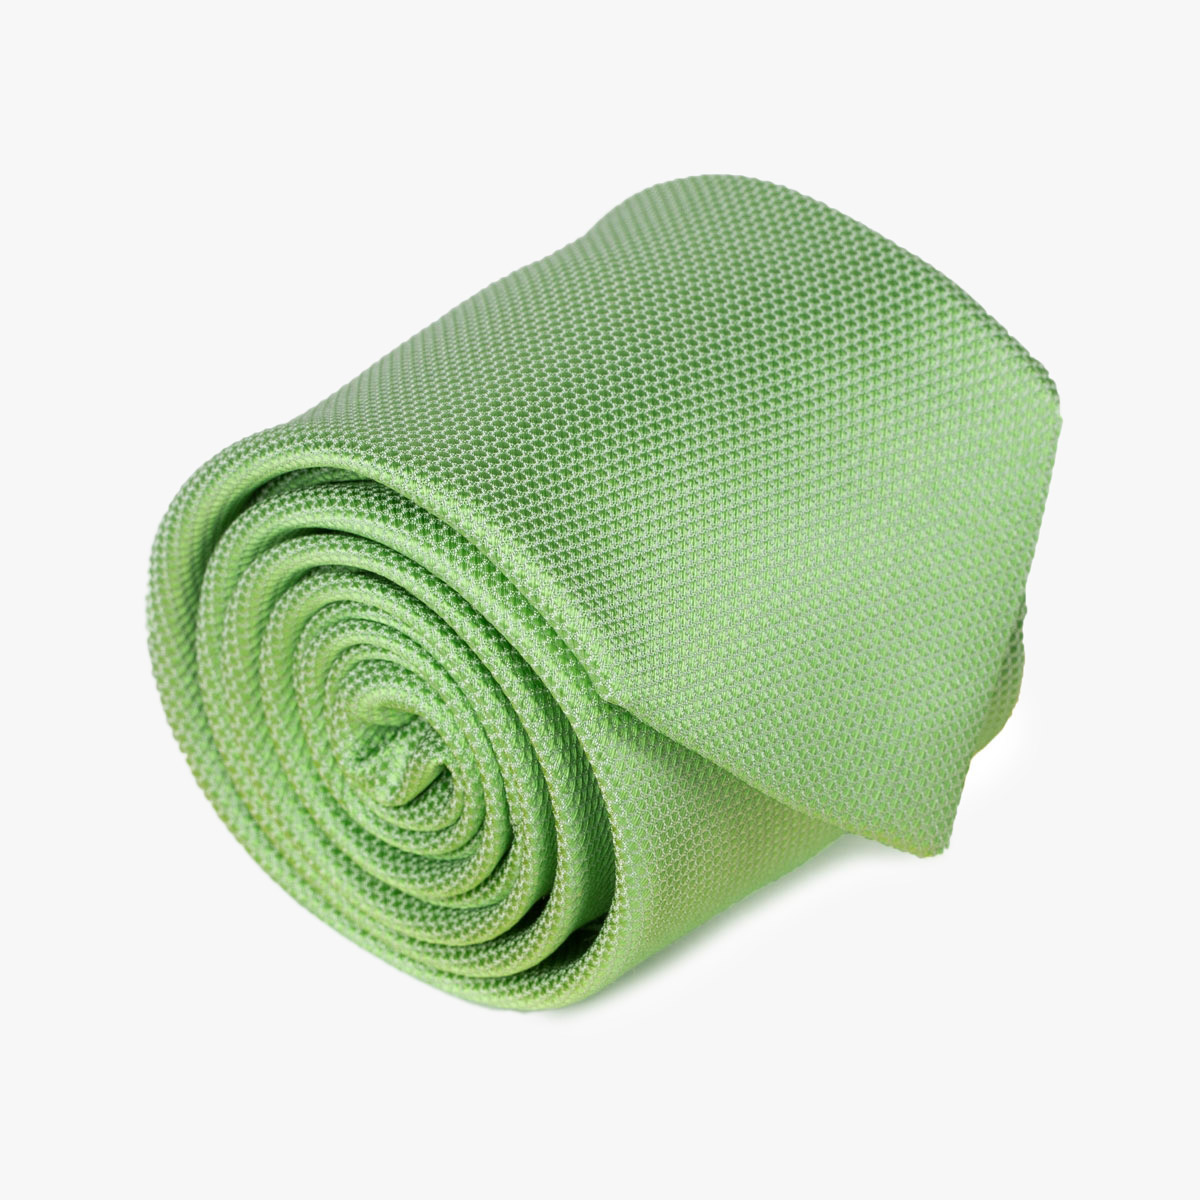 Aufgerollte Krawatte in uni grün